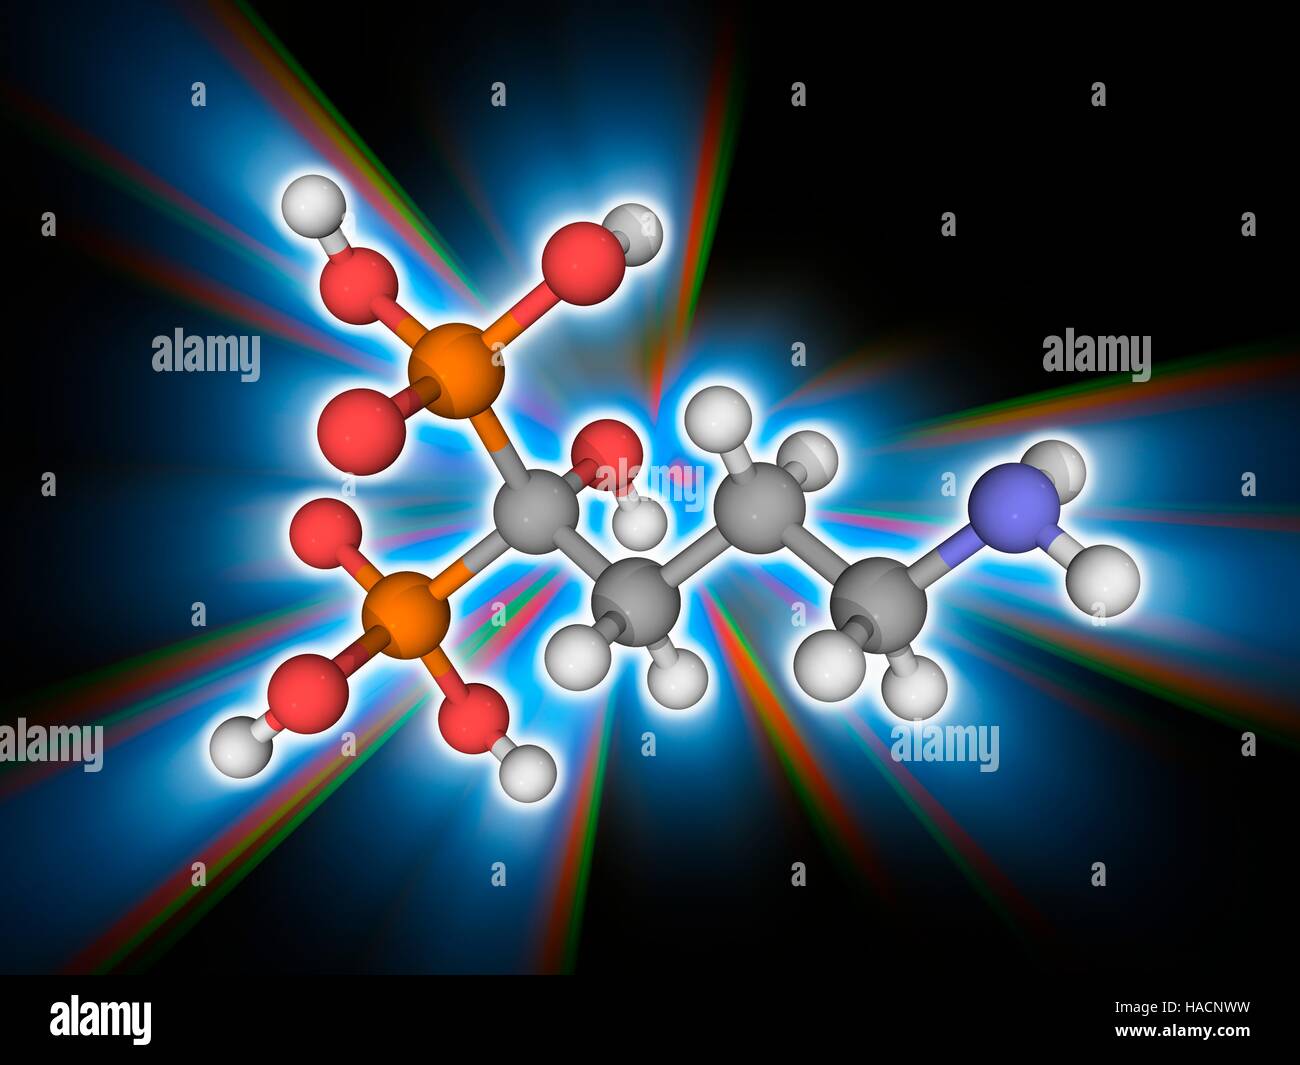 Alendronic Säure. Molekülmodell der Biphosphonat Medikament Alendronic Säure (C4. H13. N.O7. P2), zur Behandlung von Osteoporose verwendet. Atome als Kugeln dargestellt werden und sind farblich gekennzeichnet: Kohlenstoff (grau), Wasserstoff (weiß), Stickstoff (blau), Sauerstoff (rot) und Phosphor (Orange). Abbildung. Stockfoto